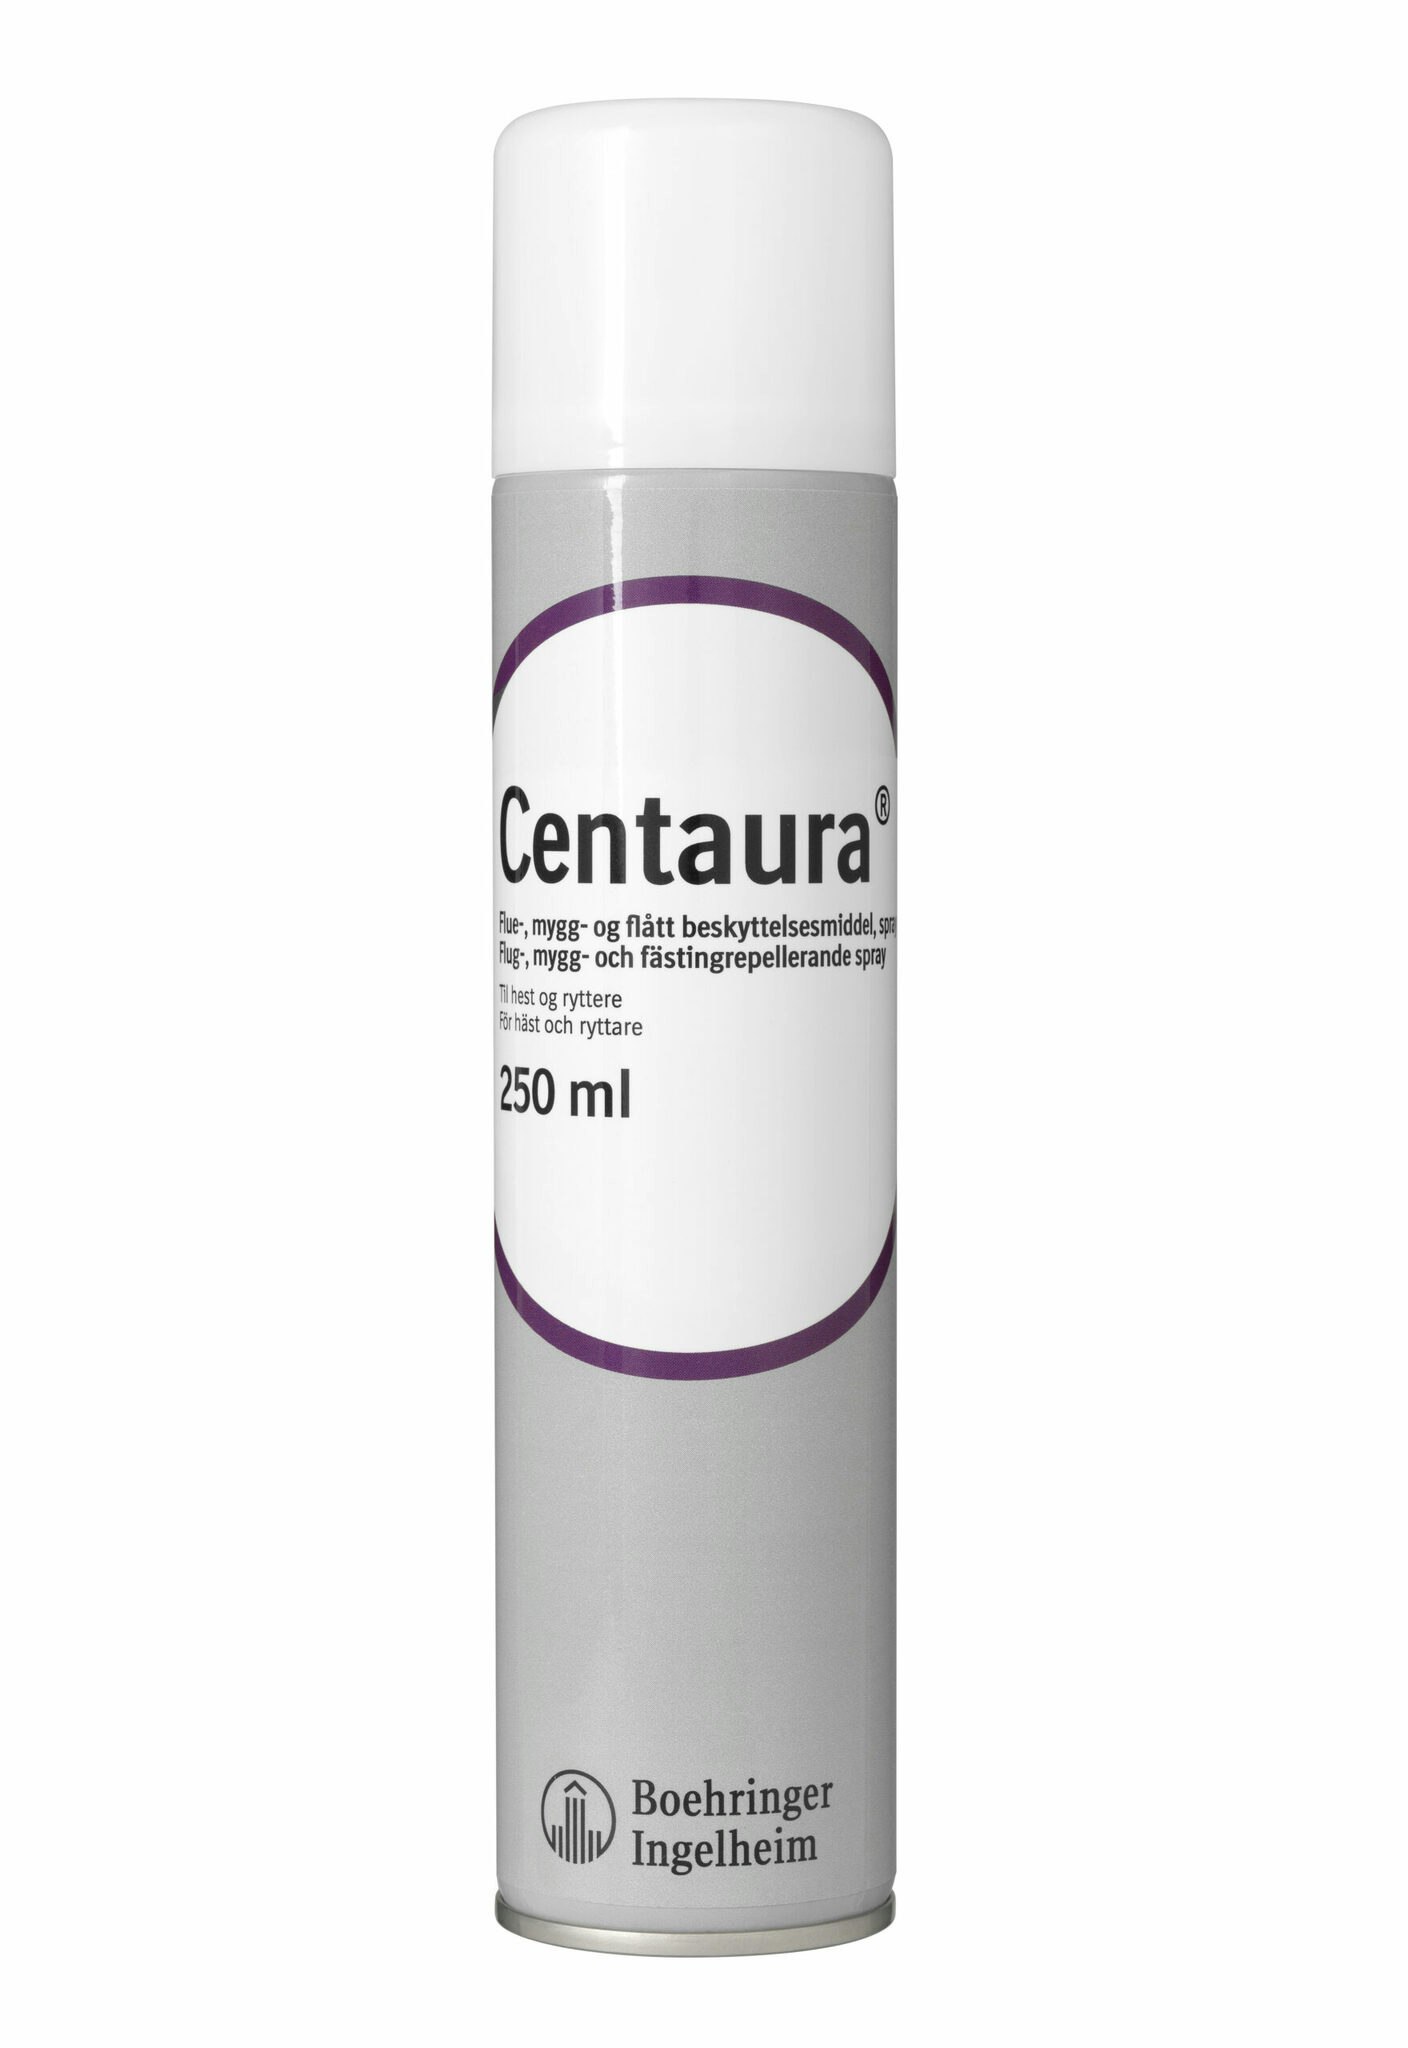 Centaura flug, mygg och fästing Spray 250ml